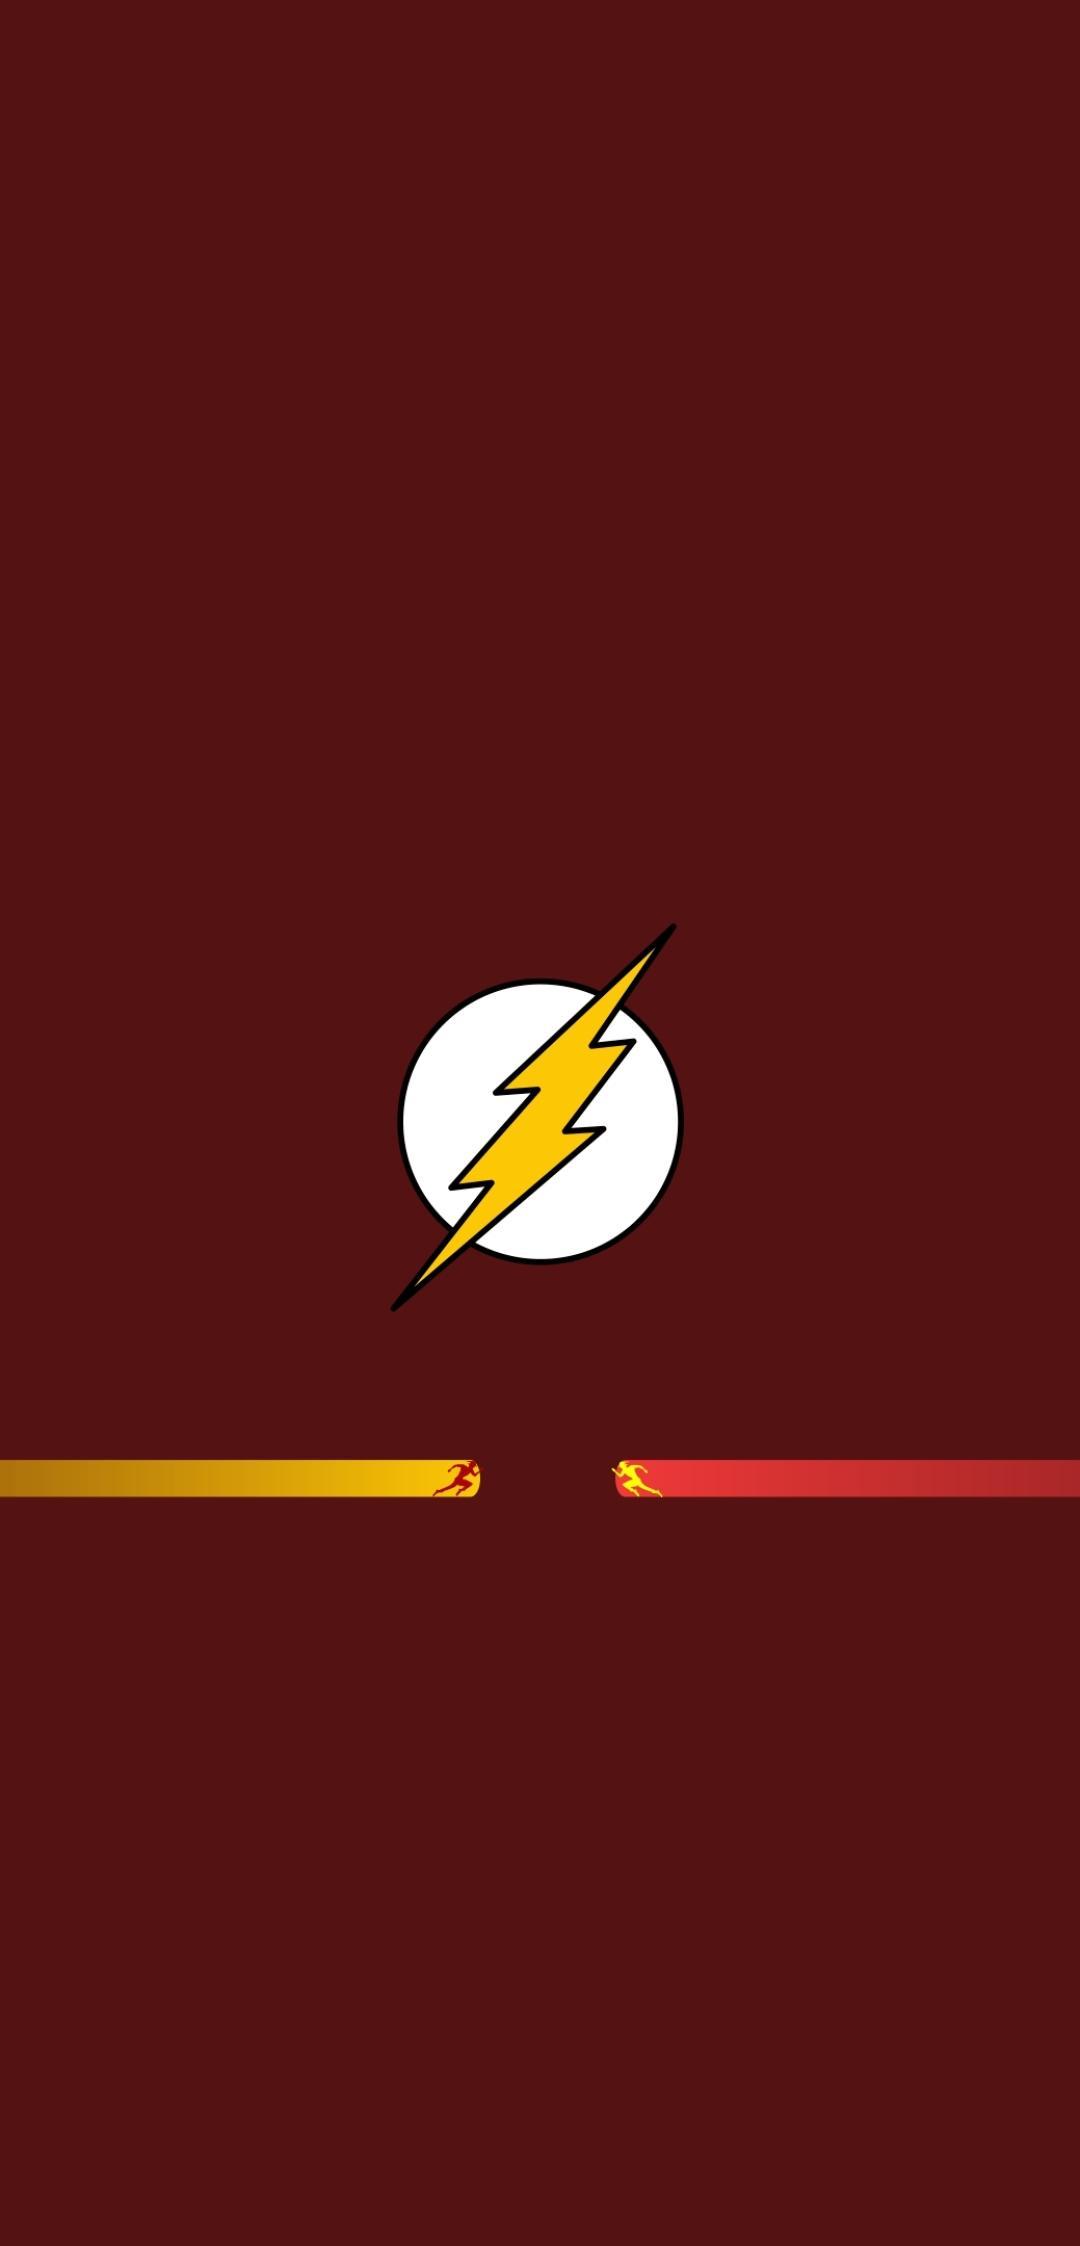 Comics/Flash